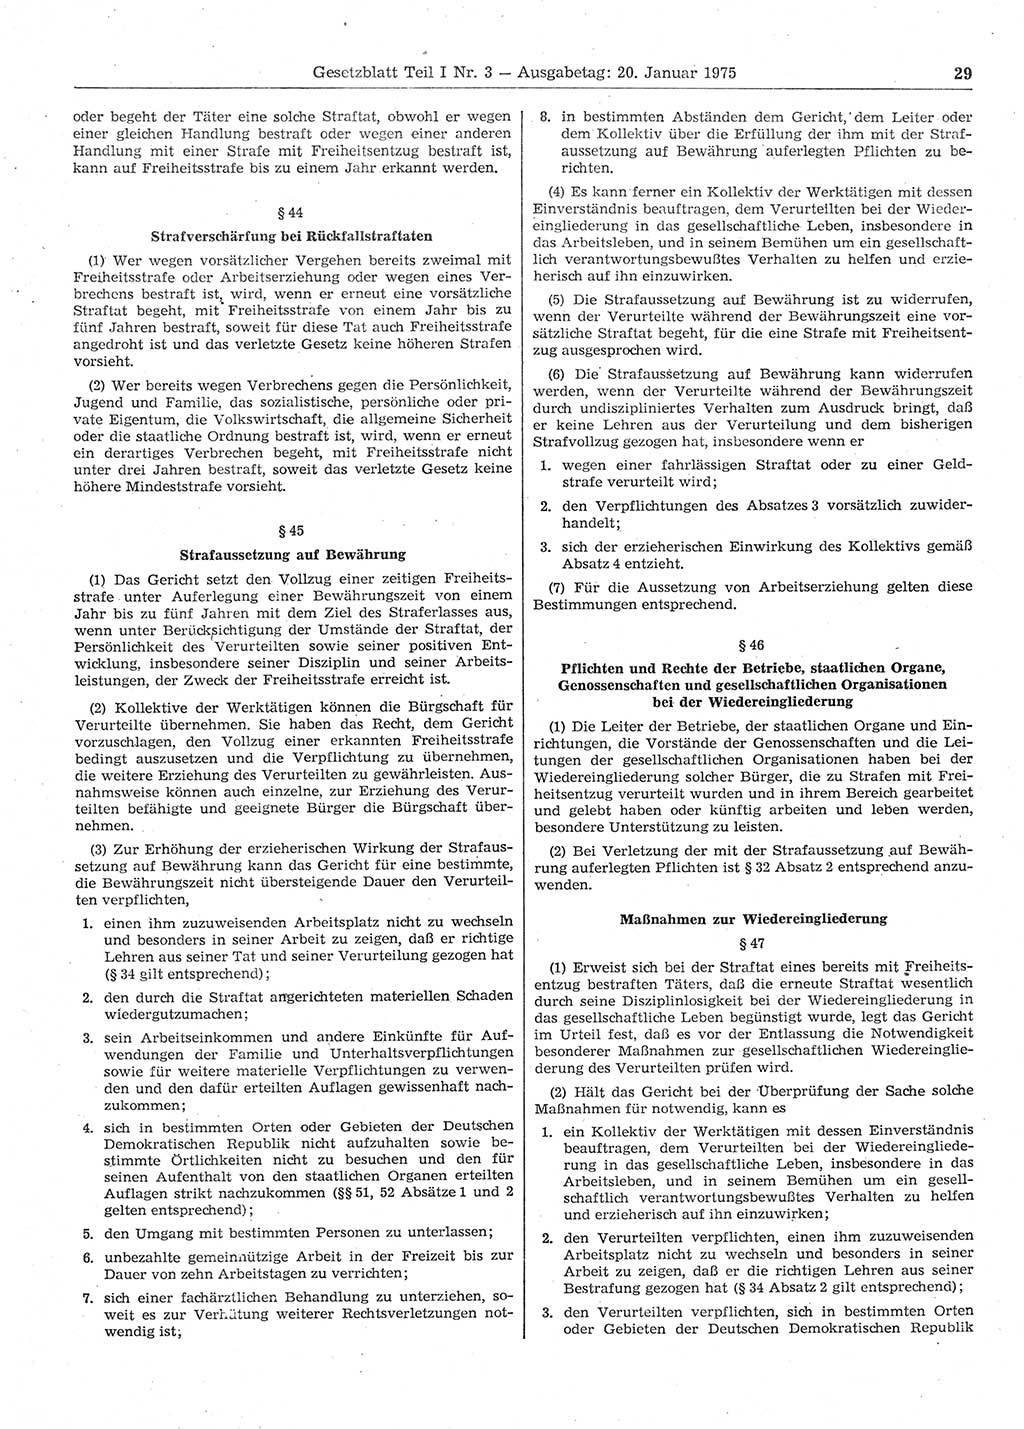 Gesetzblatt (GBl.) der Deutschen Demokratischen Republik (DDR) Teil Ⅰ 1975, Seite 29 (GBl. DDR Ⅰ 1975, S. 29)